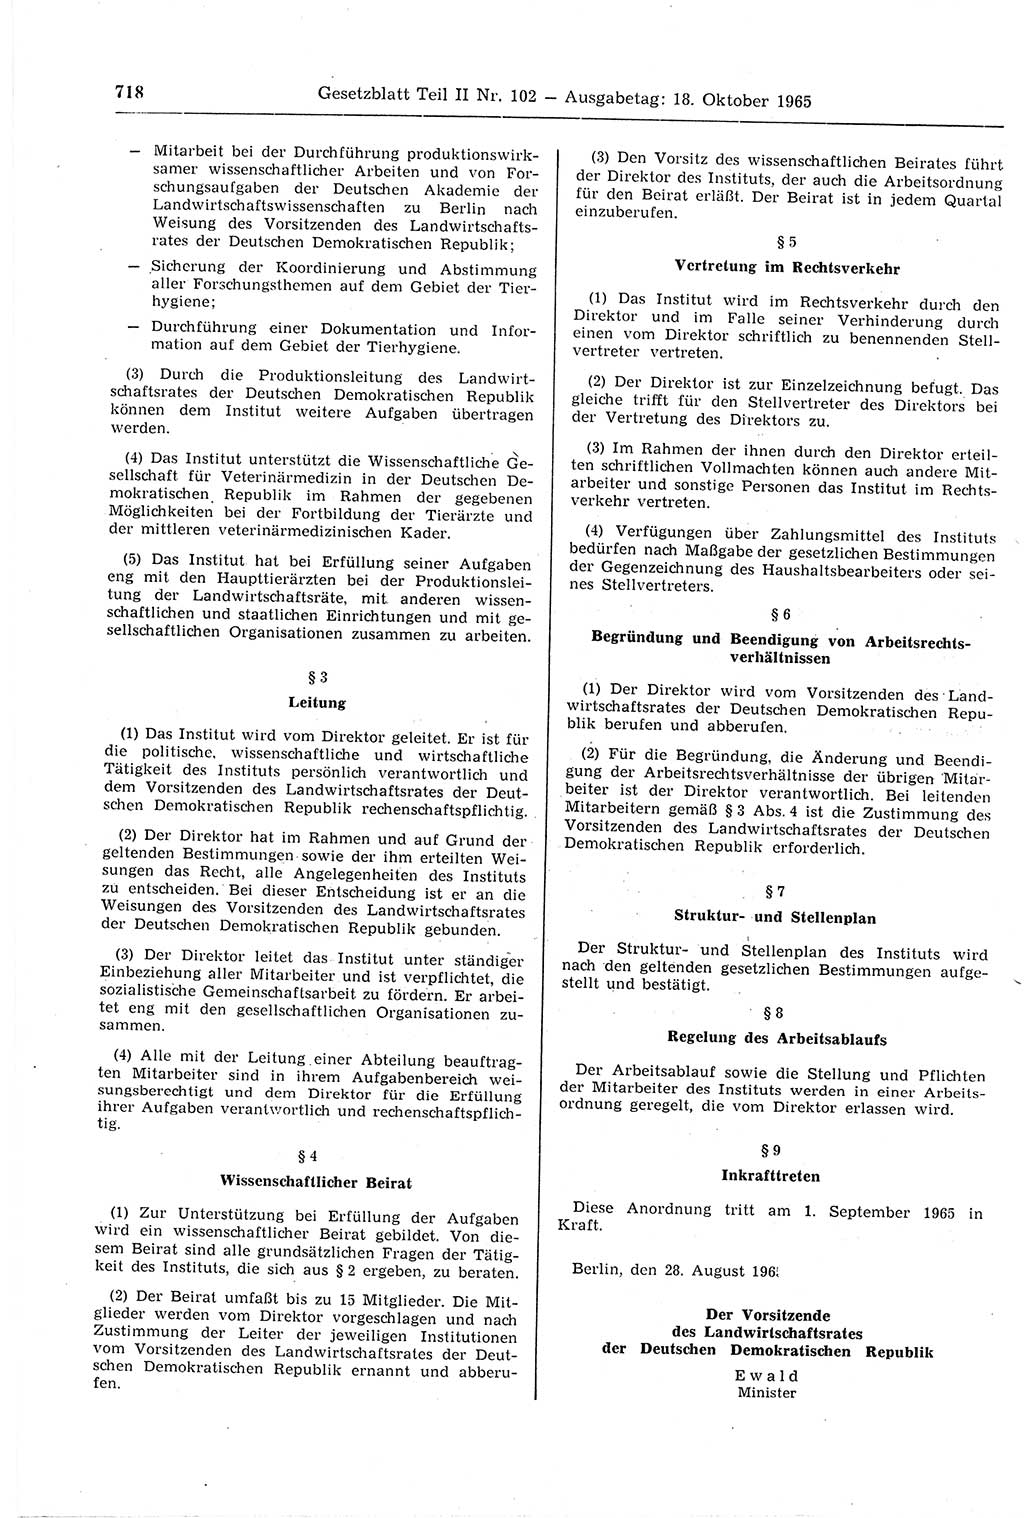 Gesetzblatt (GBl.) der Deutschen Demokratischen Republik (DDR) Teil ⅠⅠ 1965, Seite 718 (GBl. DDR ⅠⅠ 1965, S. 718)